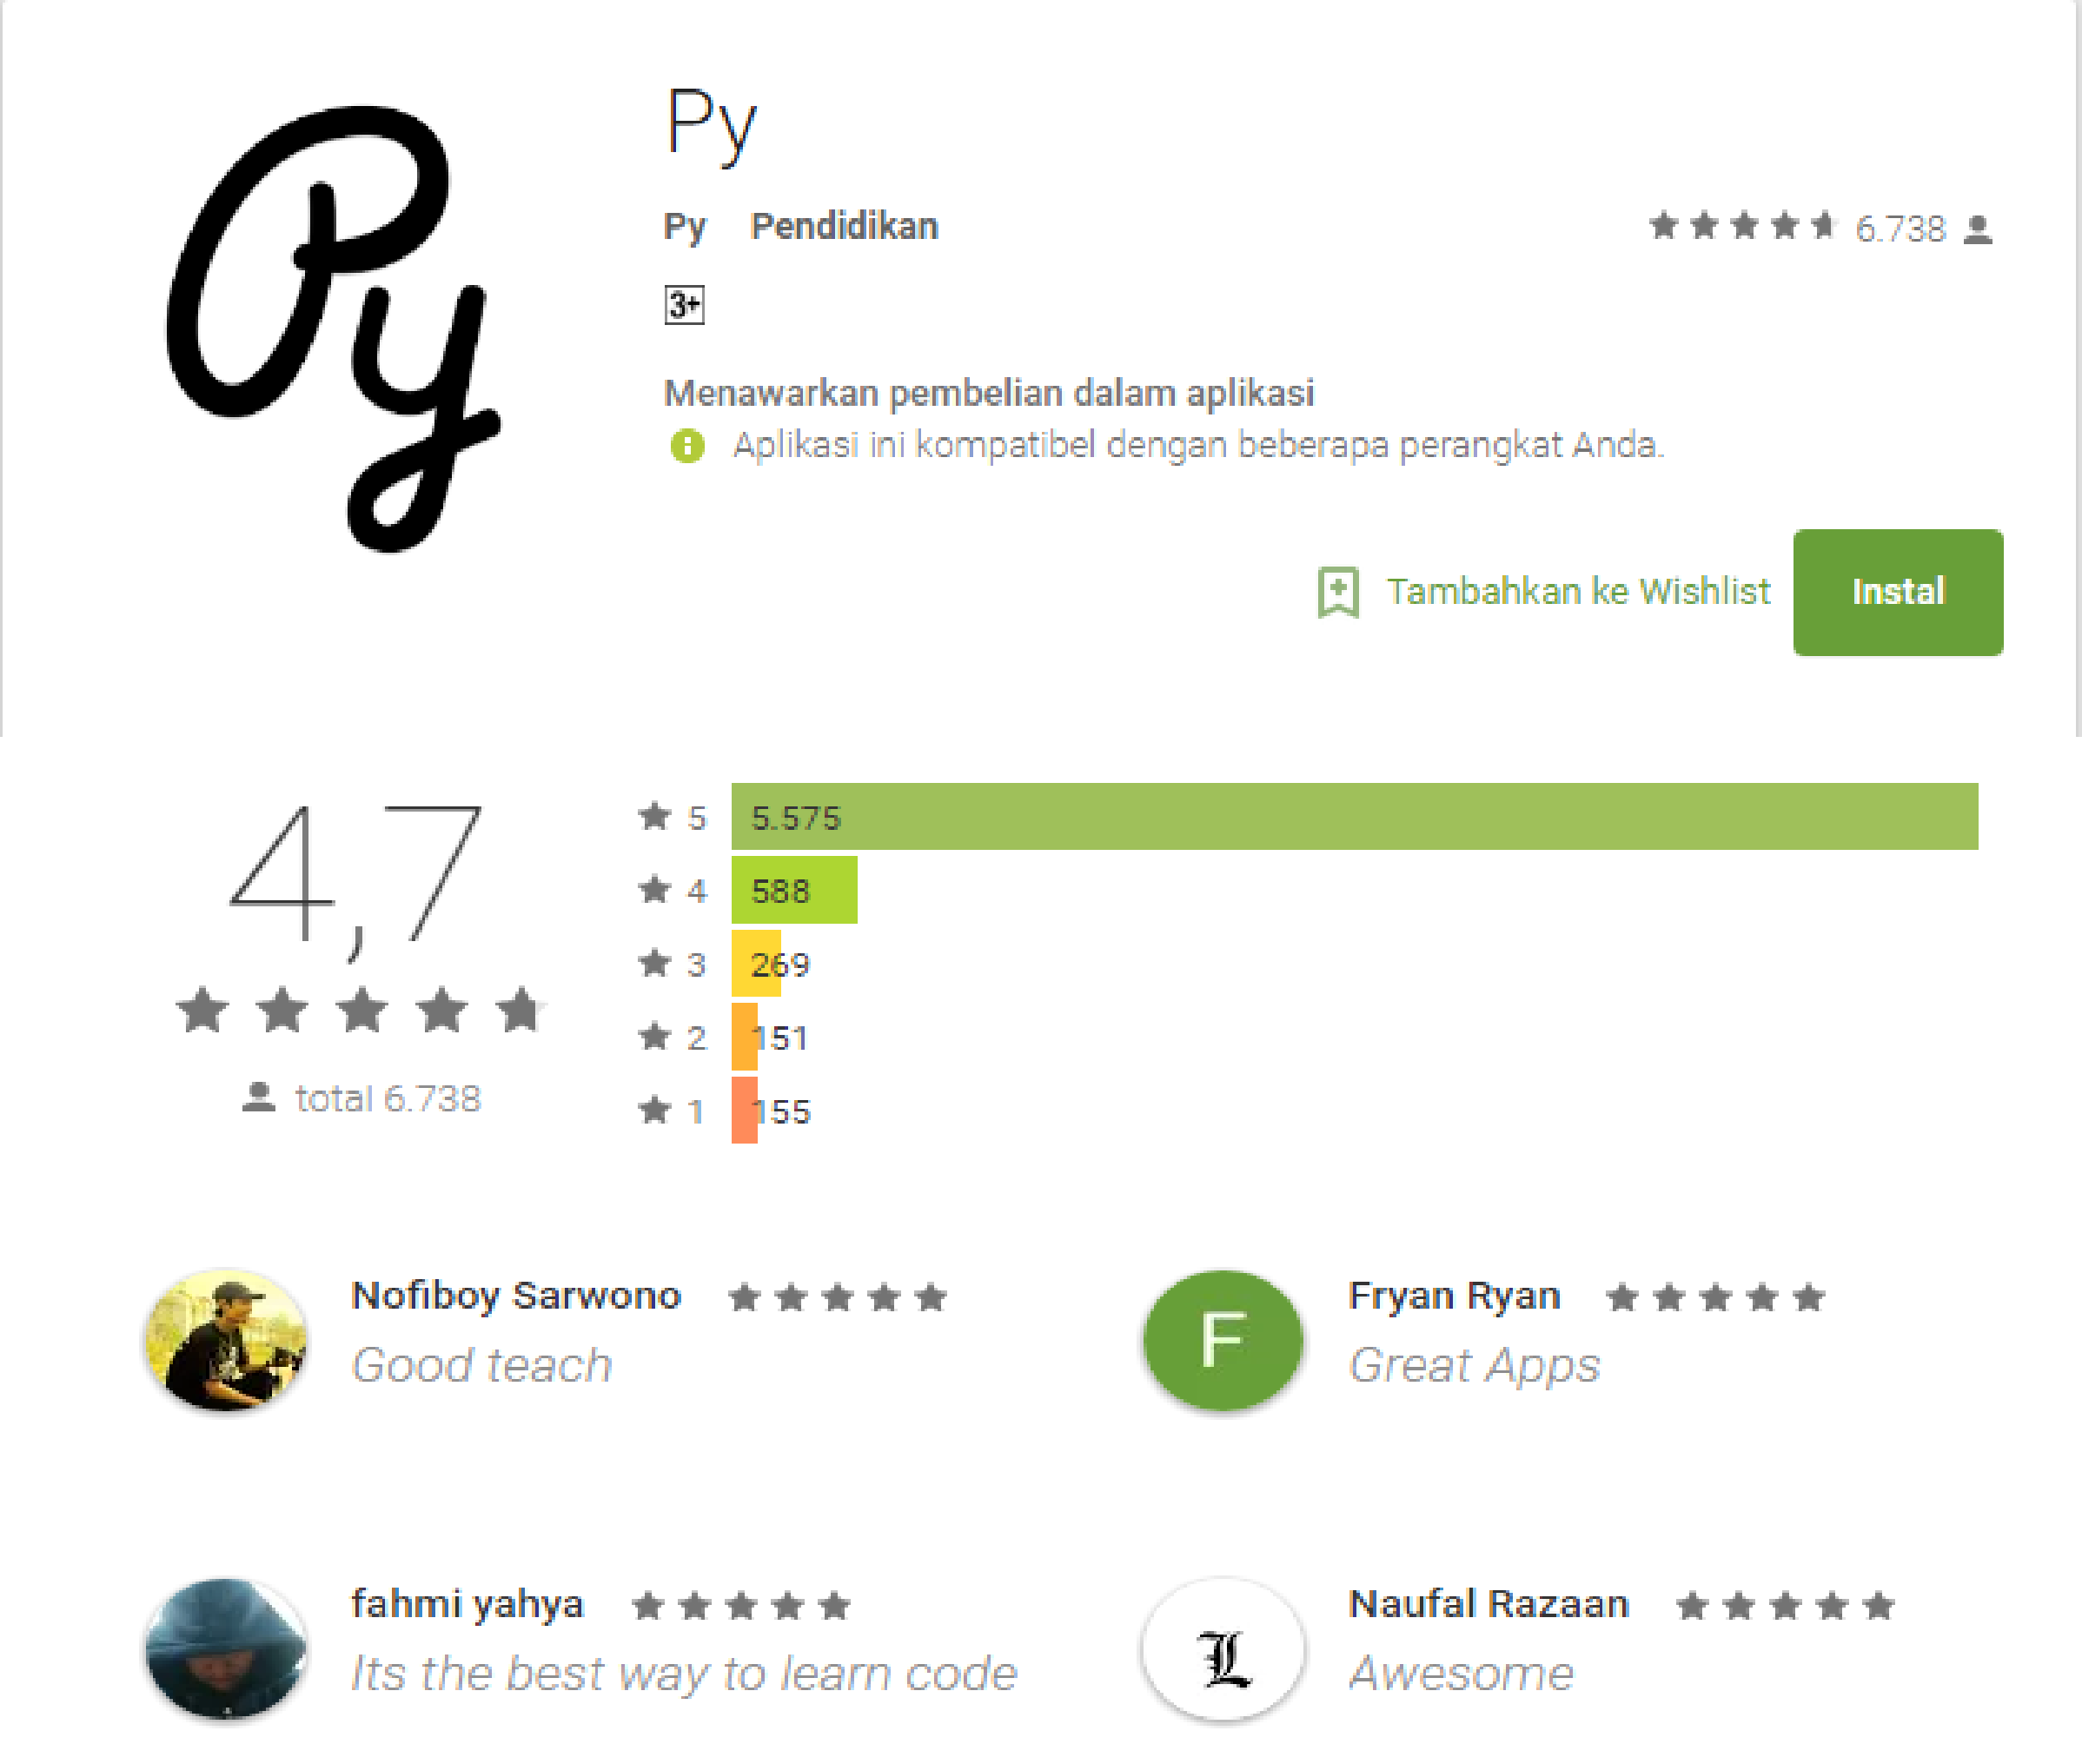 Py adalah salah satu aplikasi untuk belajar bahasa pemrograman Aplikasi ini dapat diunduh melalui play store Disini yang dipelajari adalah dasar dasar